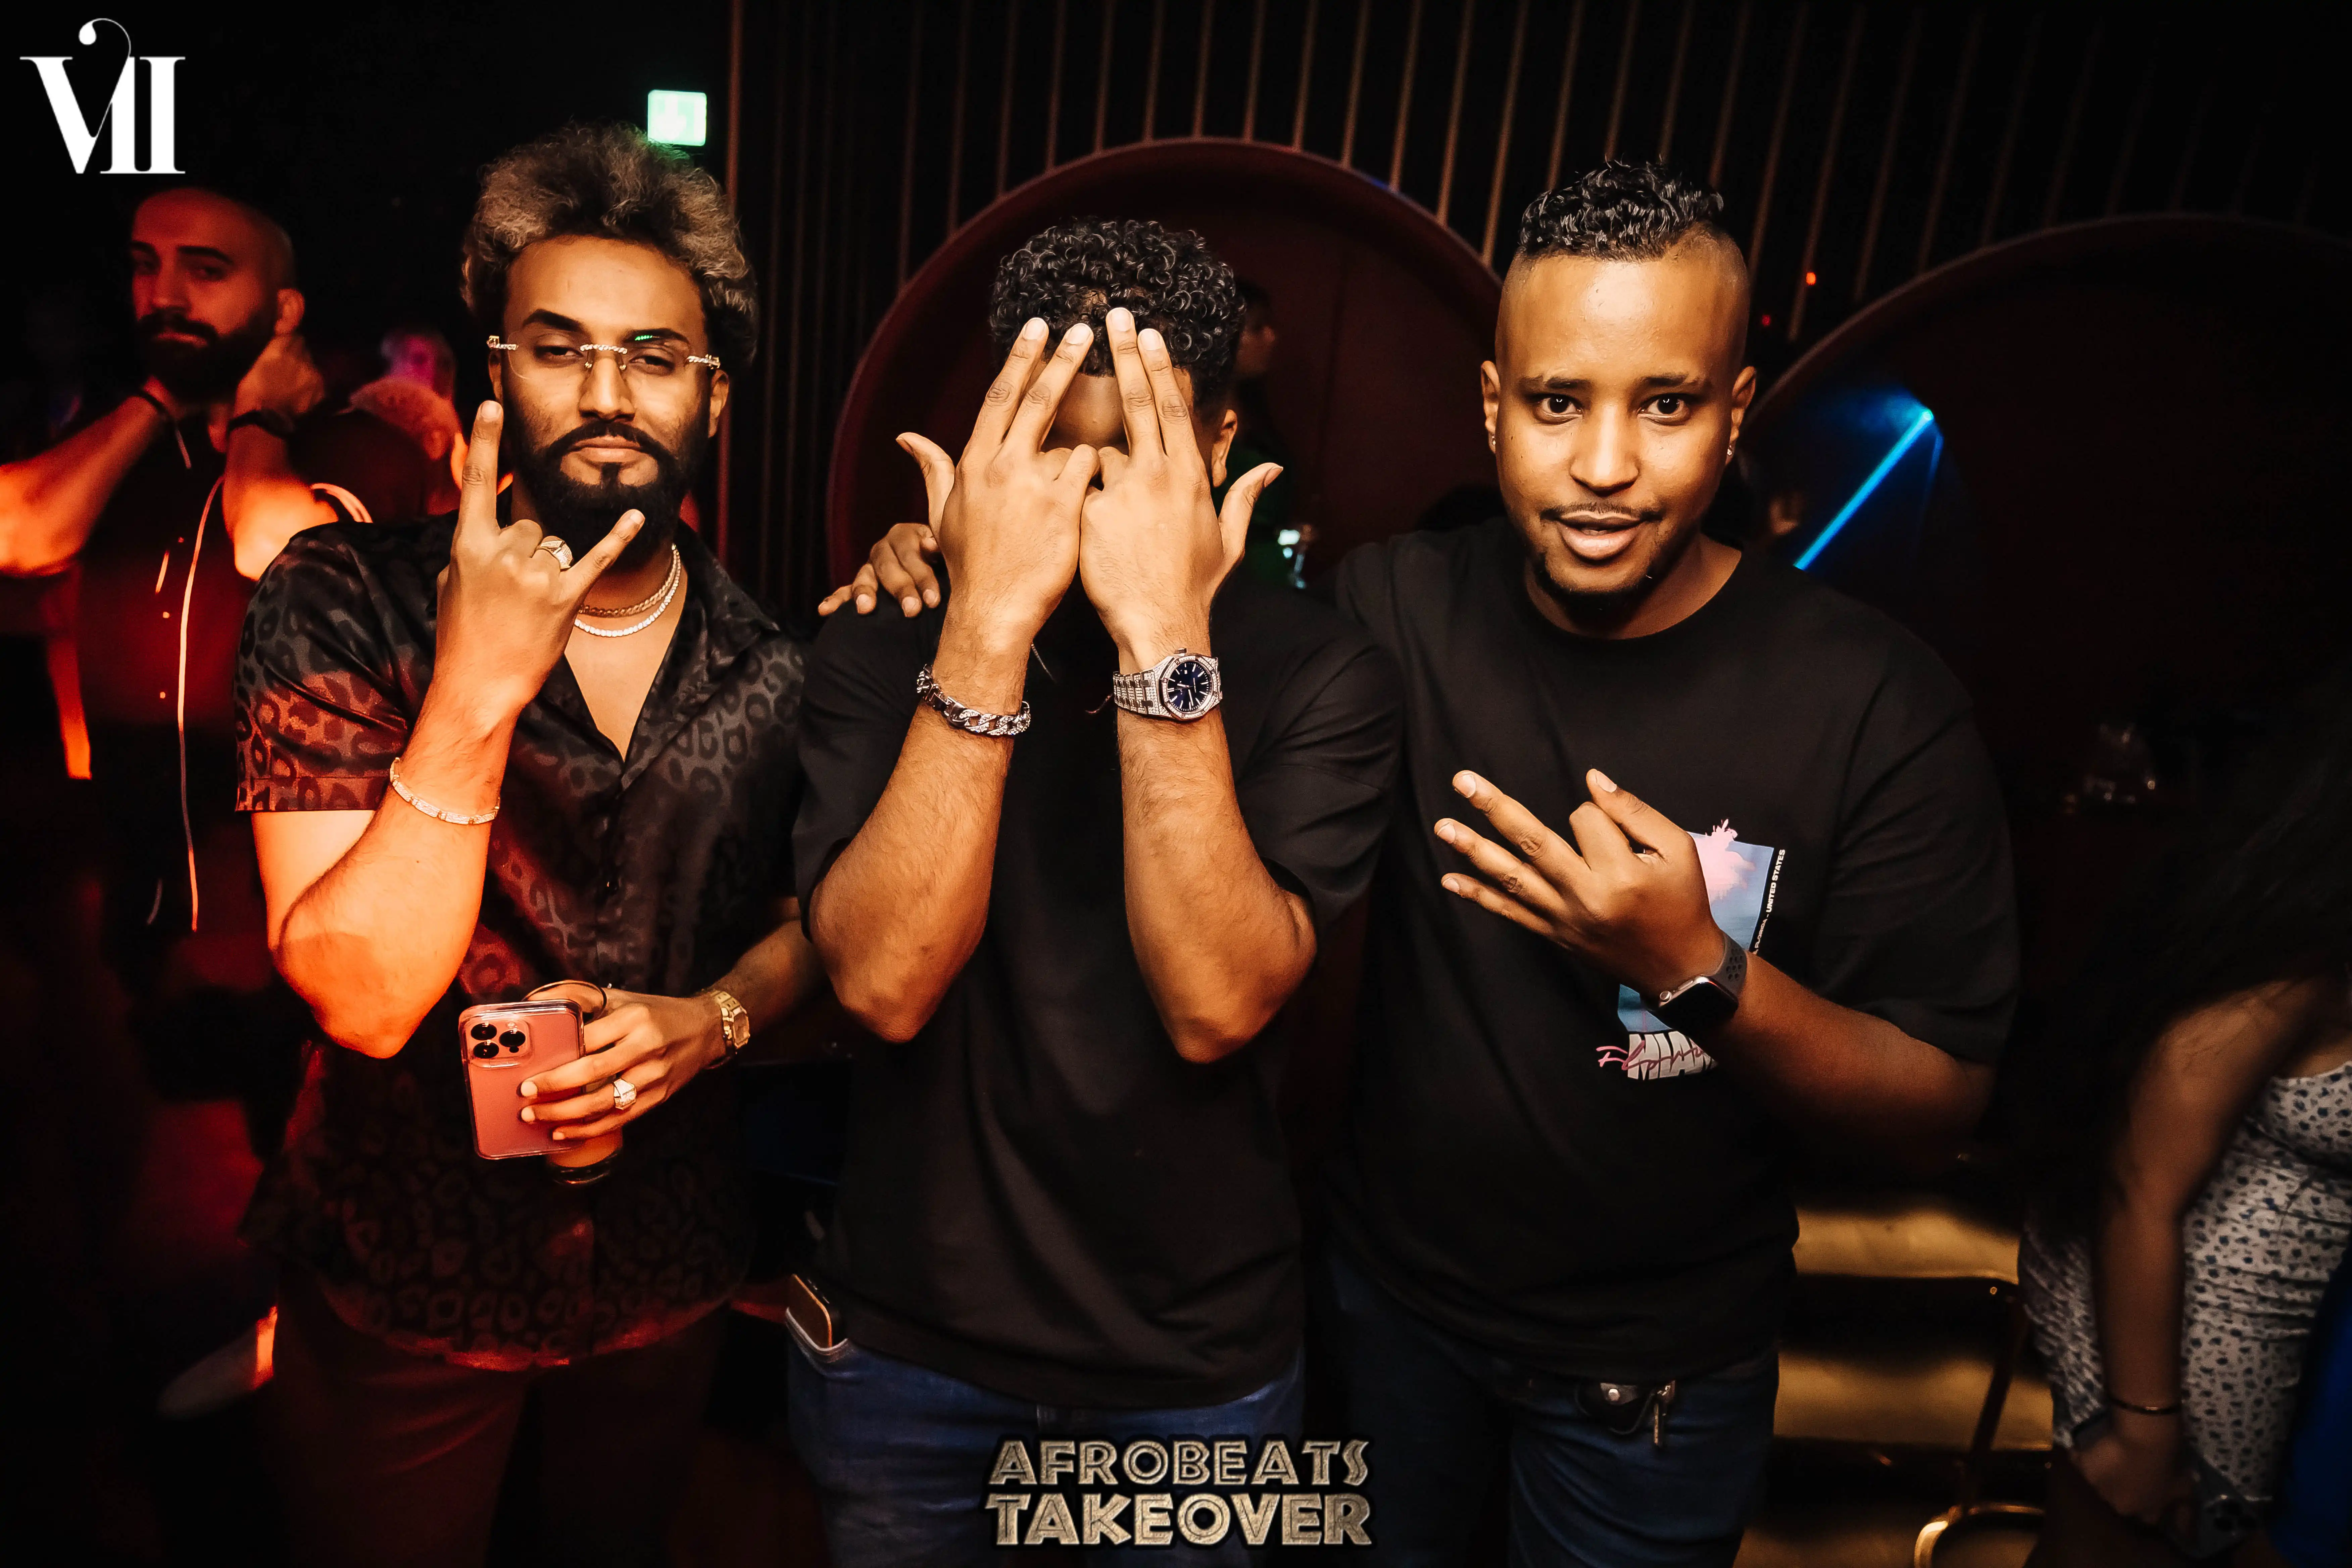 VII Dubai Night Club